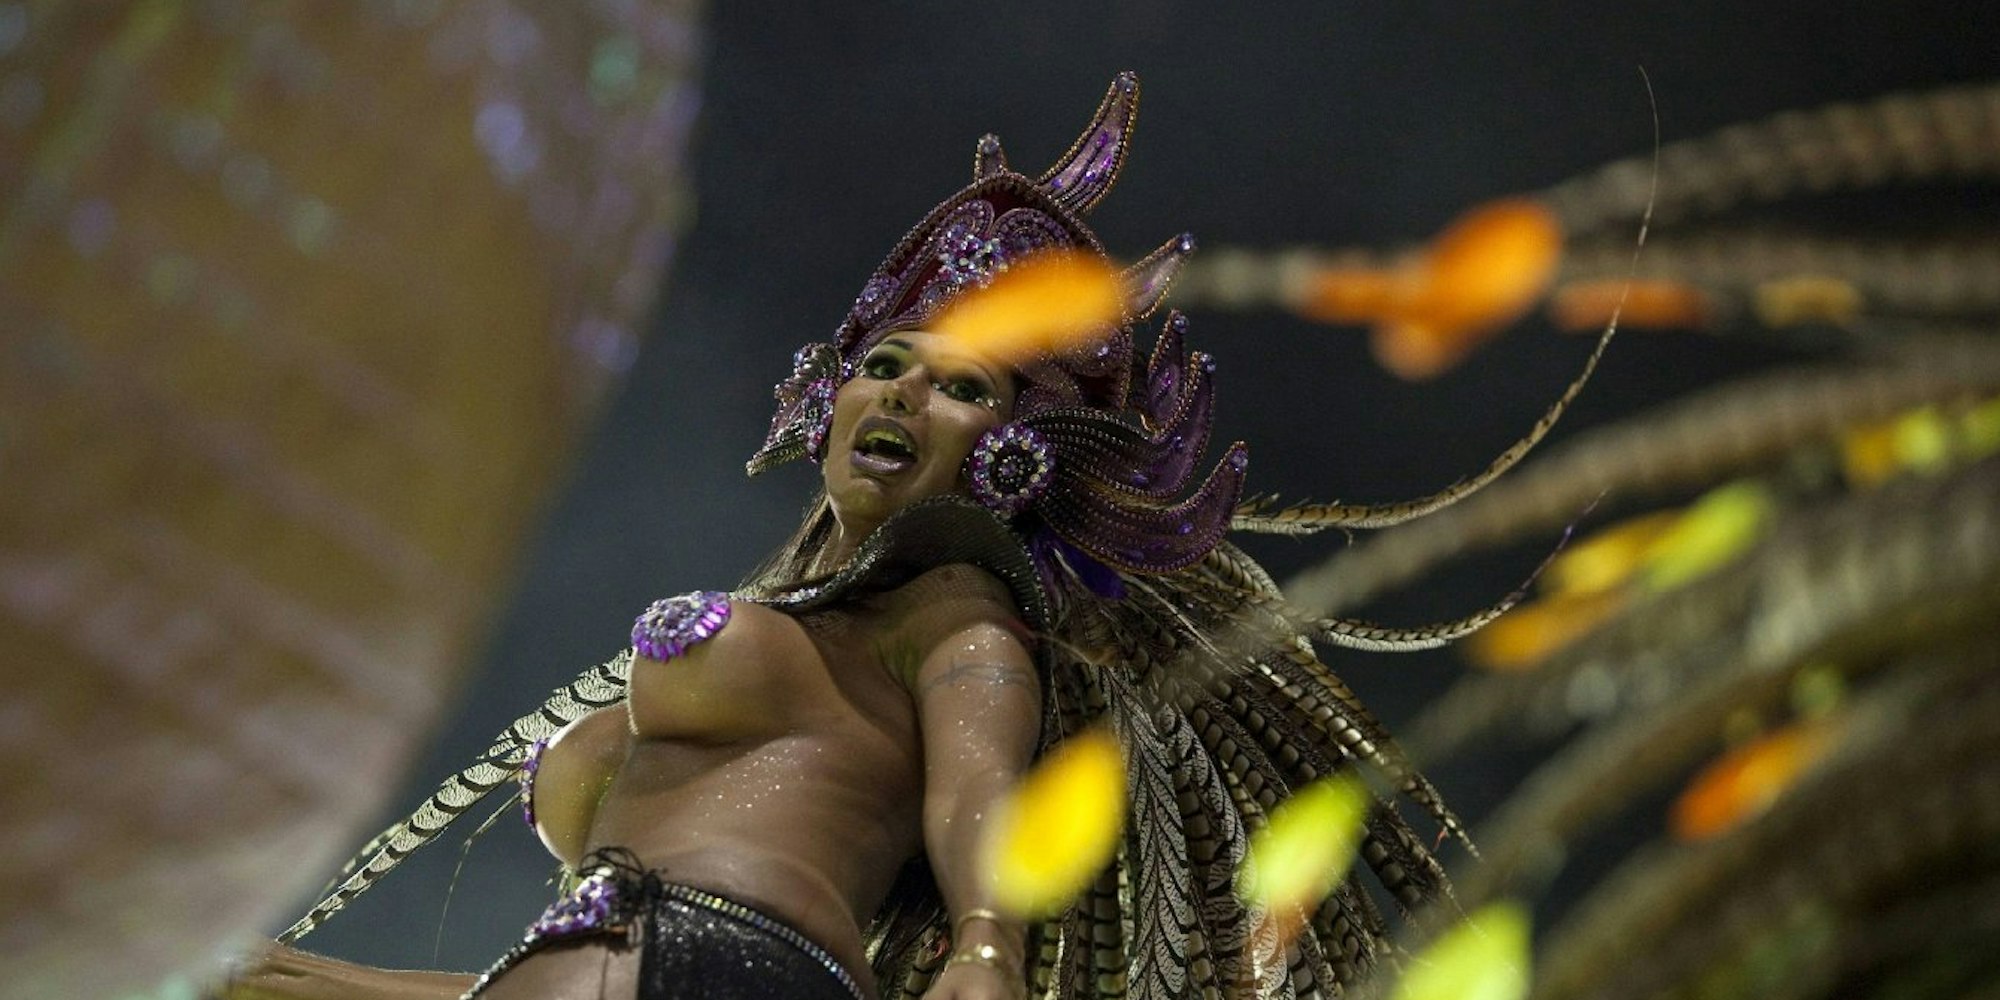 Wer hätte das gedacht? Im Land der Samba-Tänzerinnen liegt die Durchschnitts-Körbchengröße nur bei C.